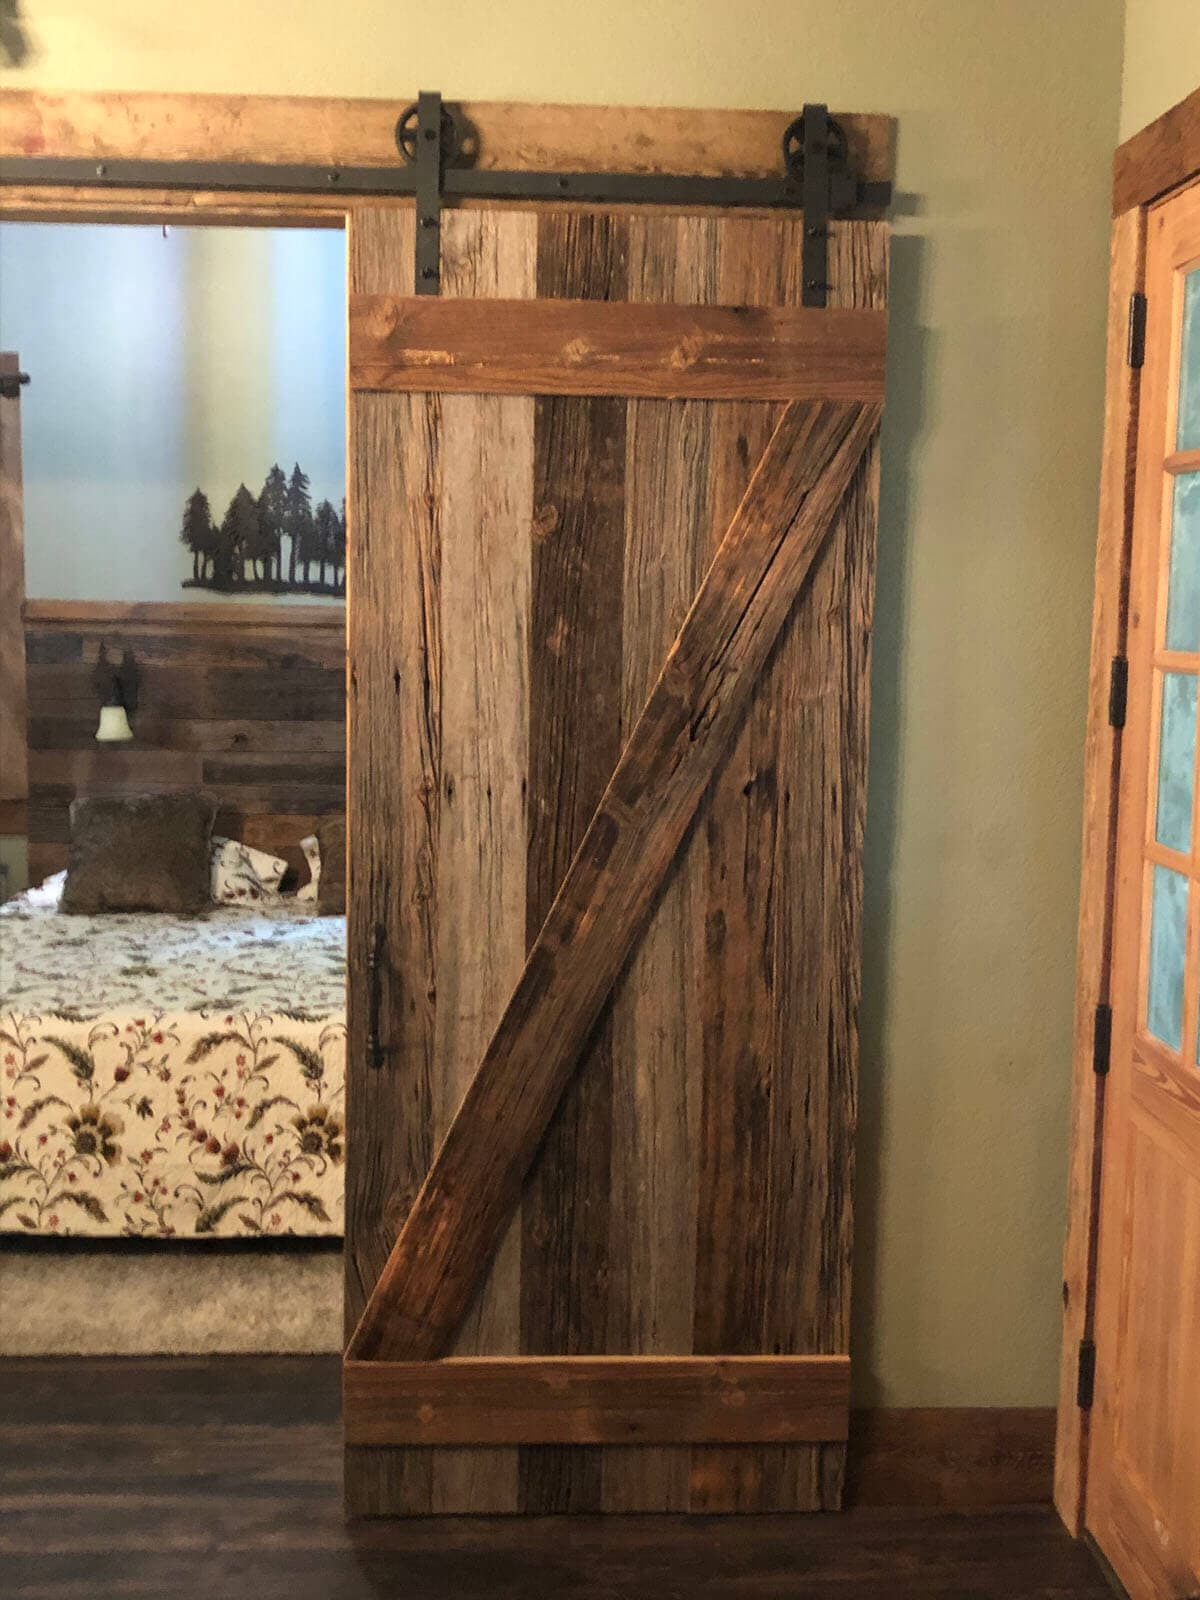 Original Surface interior Sliding Pine Barn Door